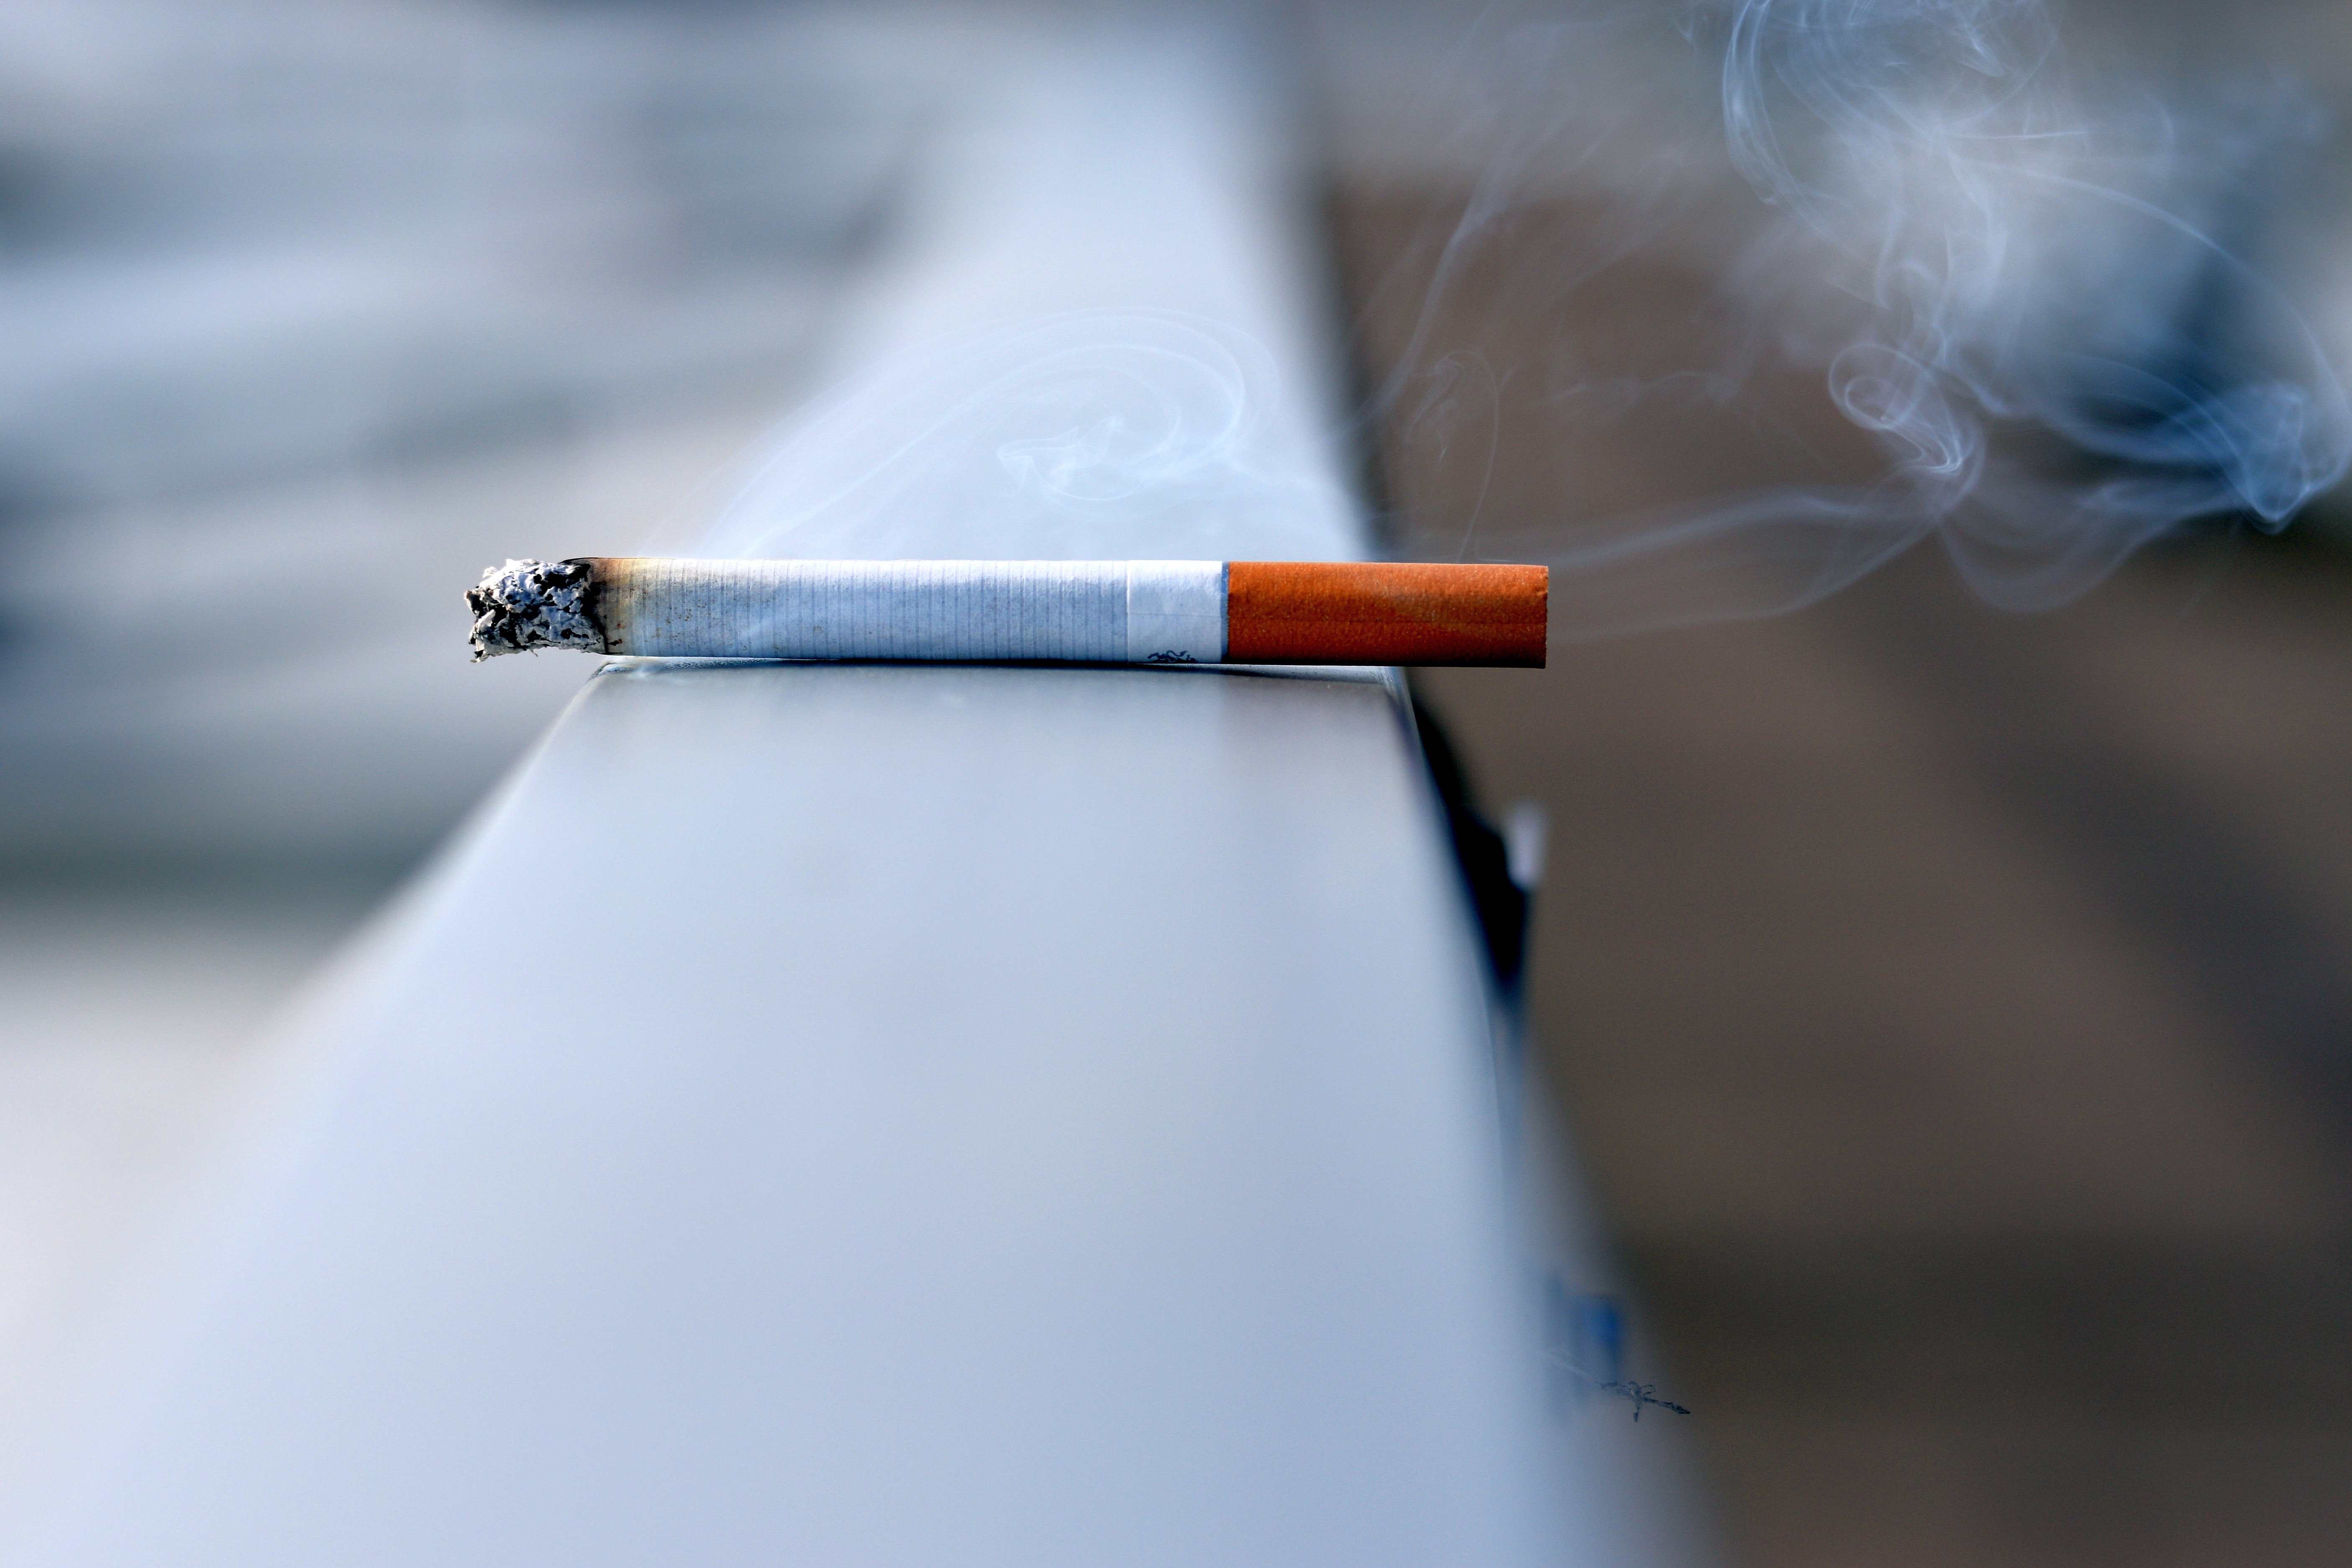 Els pneumòlegs adverteixen que fumar en terrasses augmenta el risc de contagi